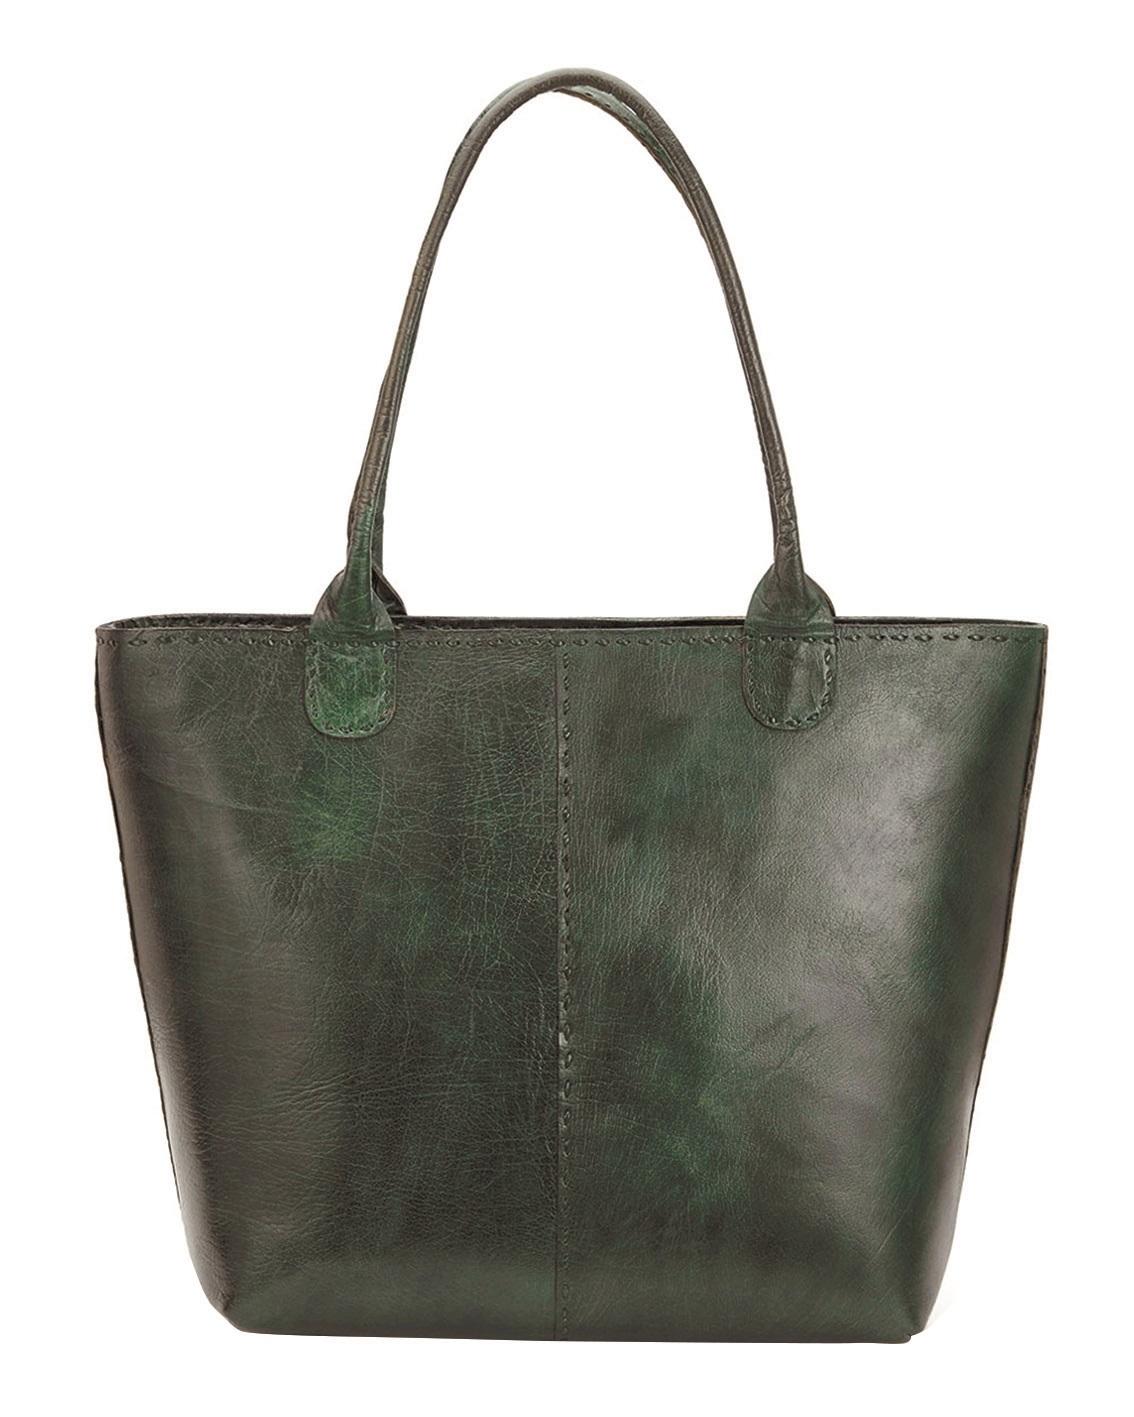 EAST, Leather Bucket Bag, £65